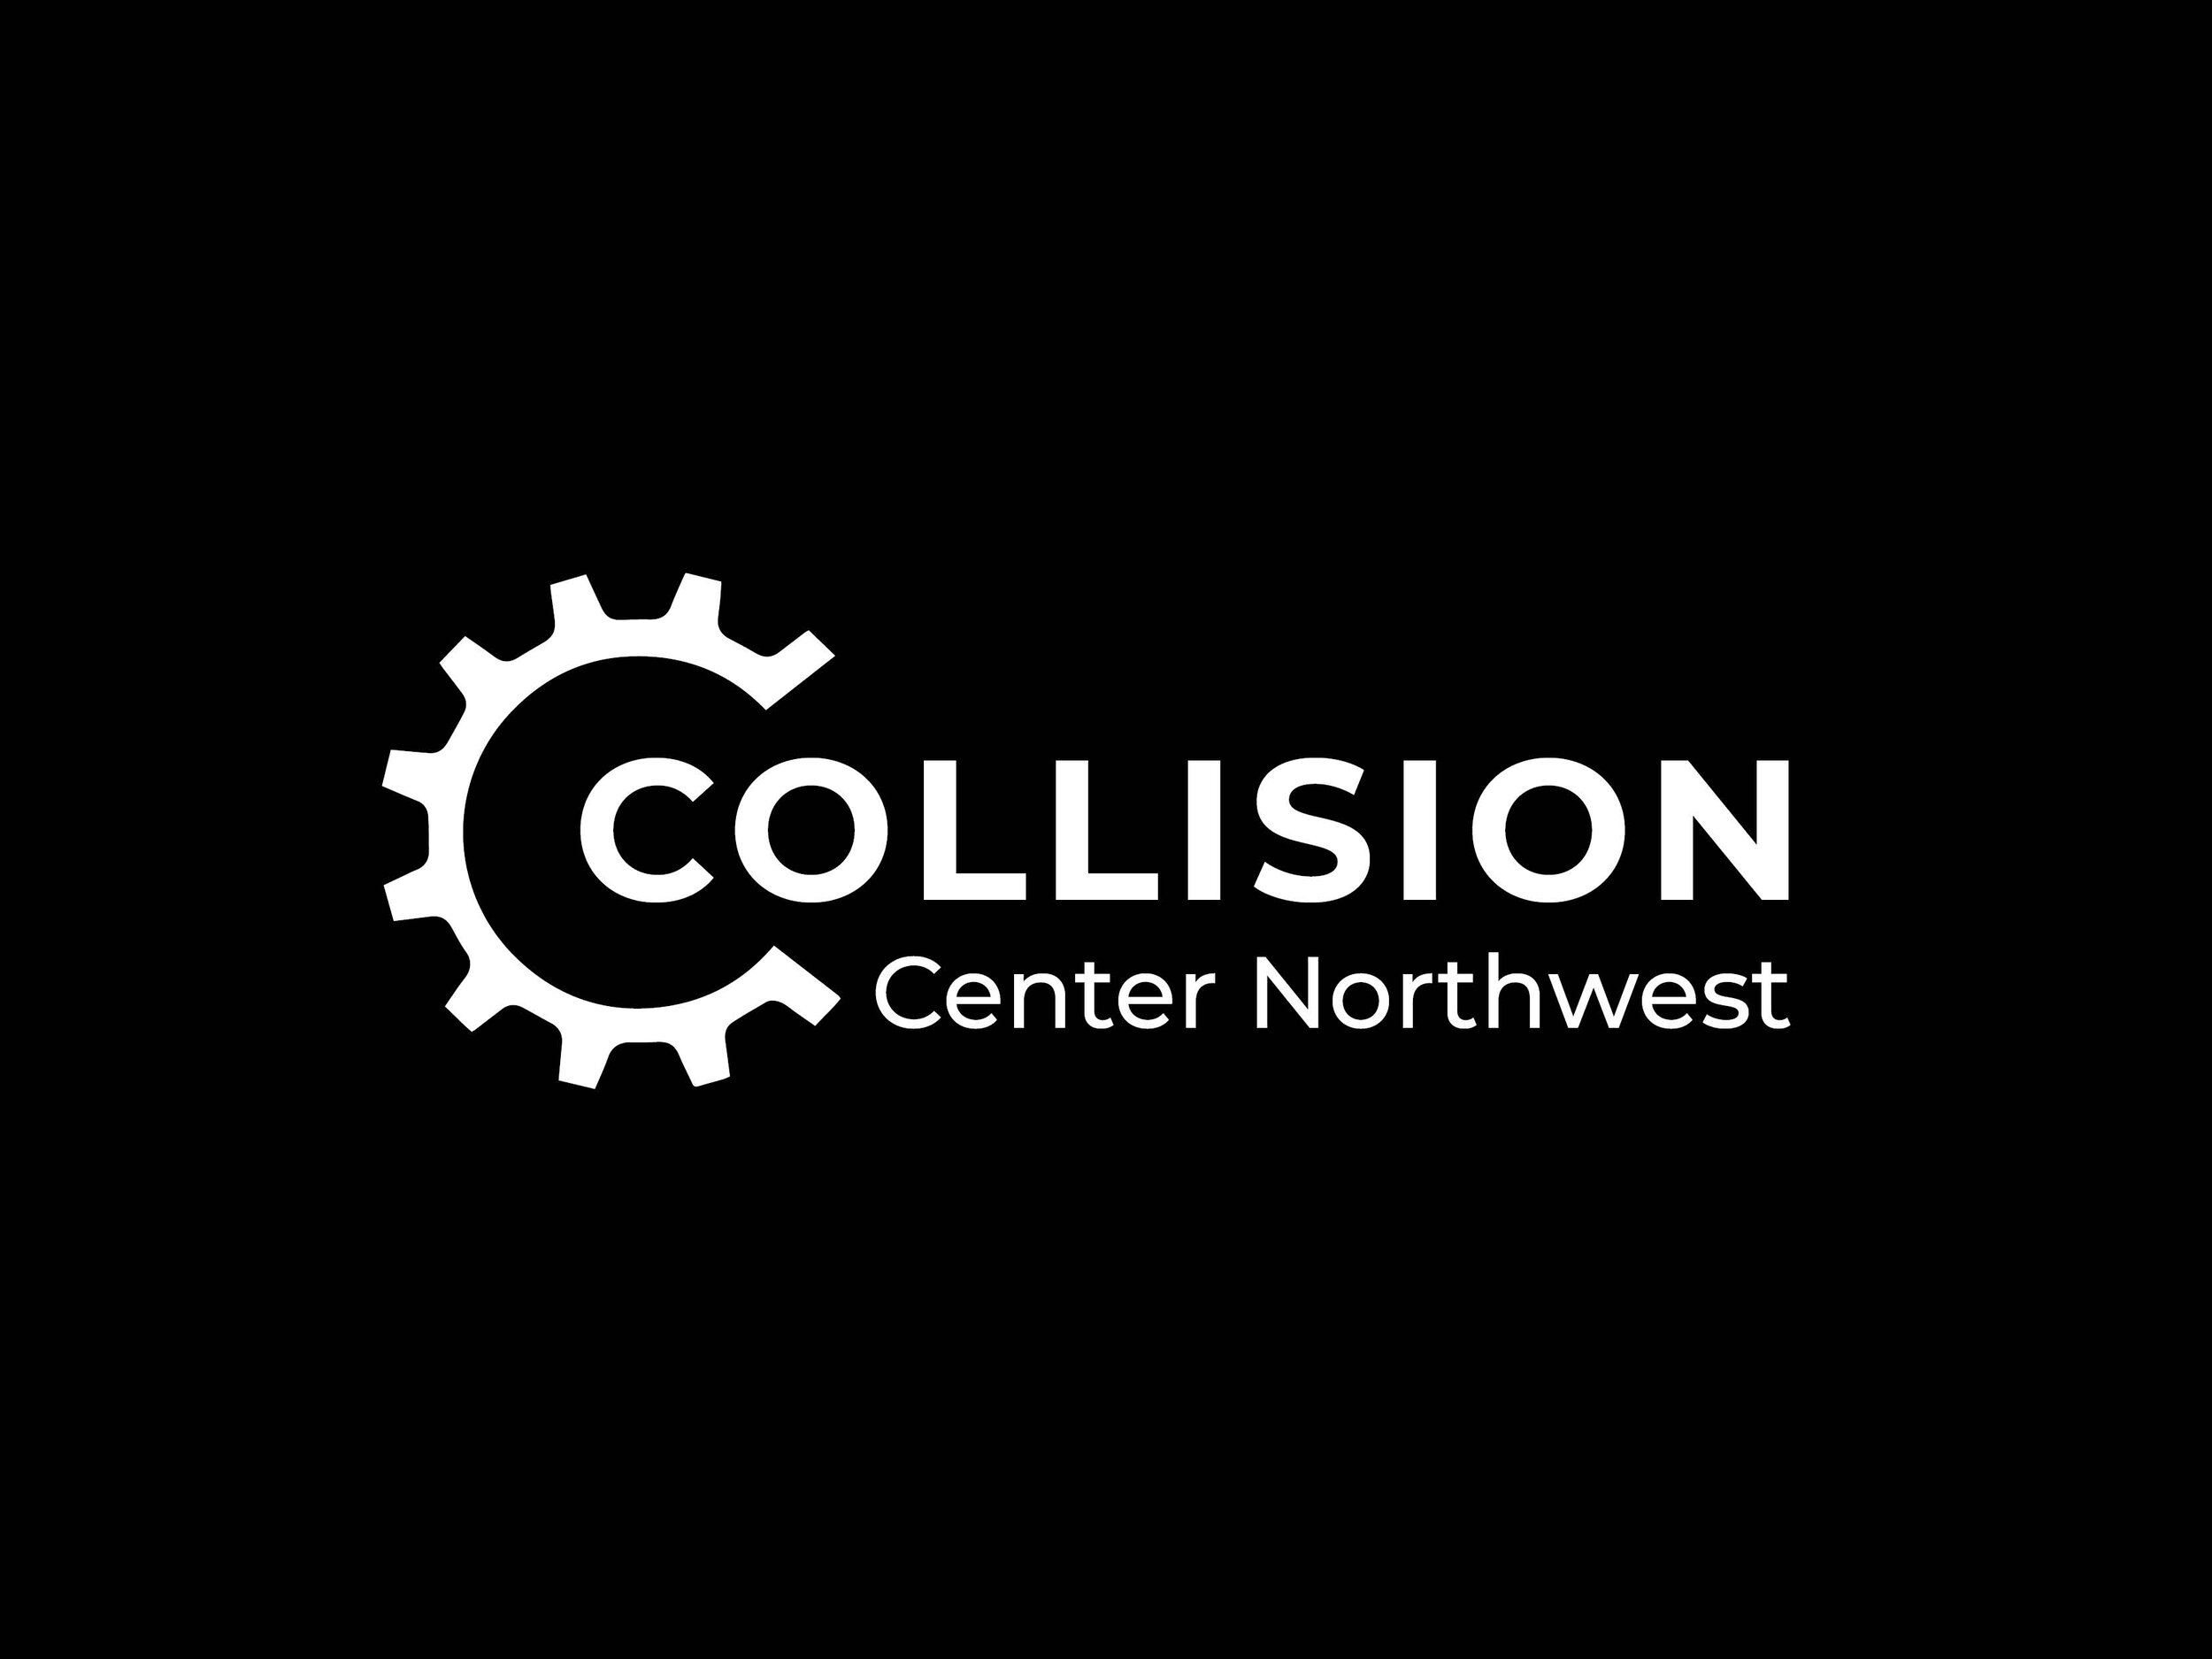 Collision Center Northwest G Disain.jpg